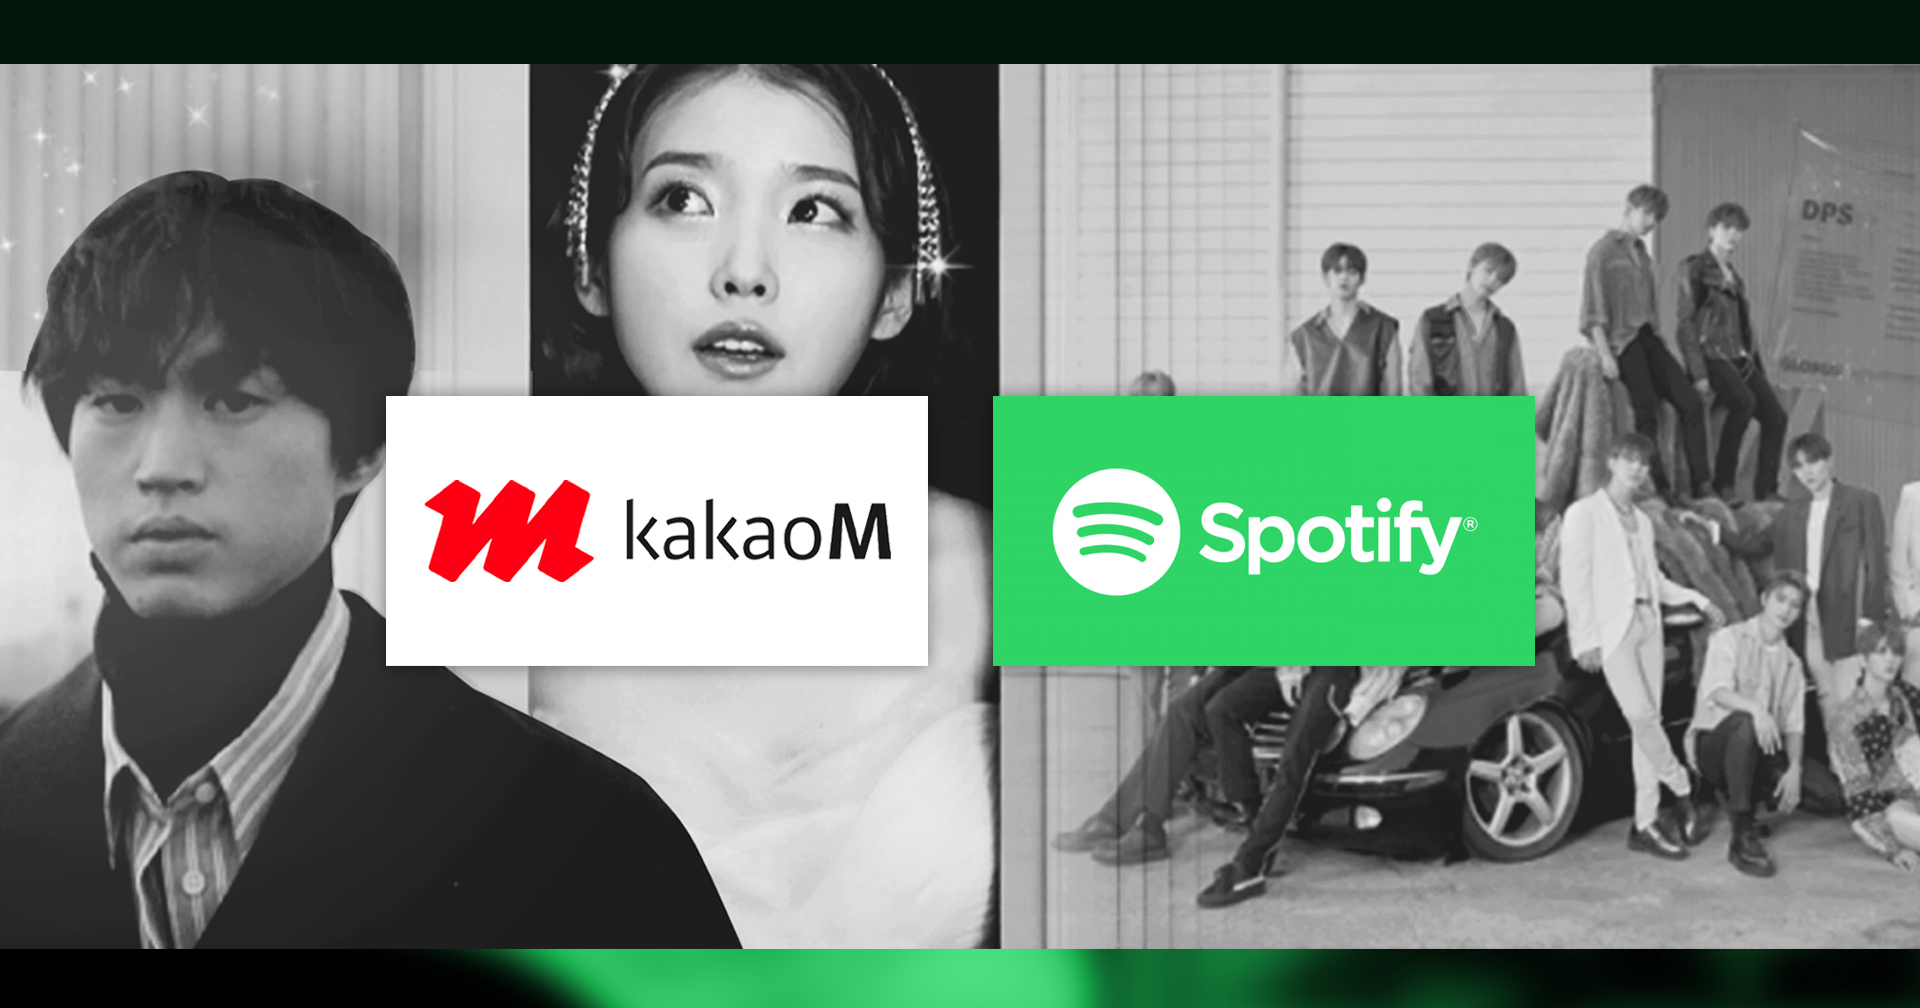 ดีลกันแล้ว Spotify ได้สิทธิ์เพลงเกาหลีจาก Kakao กลับมา เตรียมฟัง IU, Epik High, SEVENTEEN อีกครั้ง